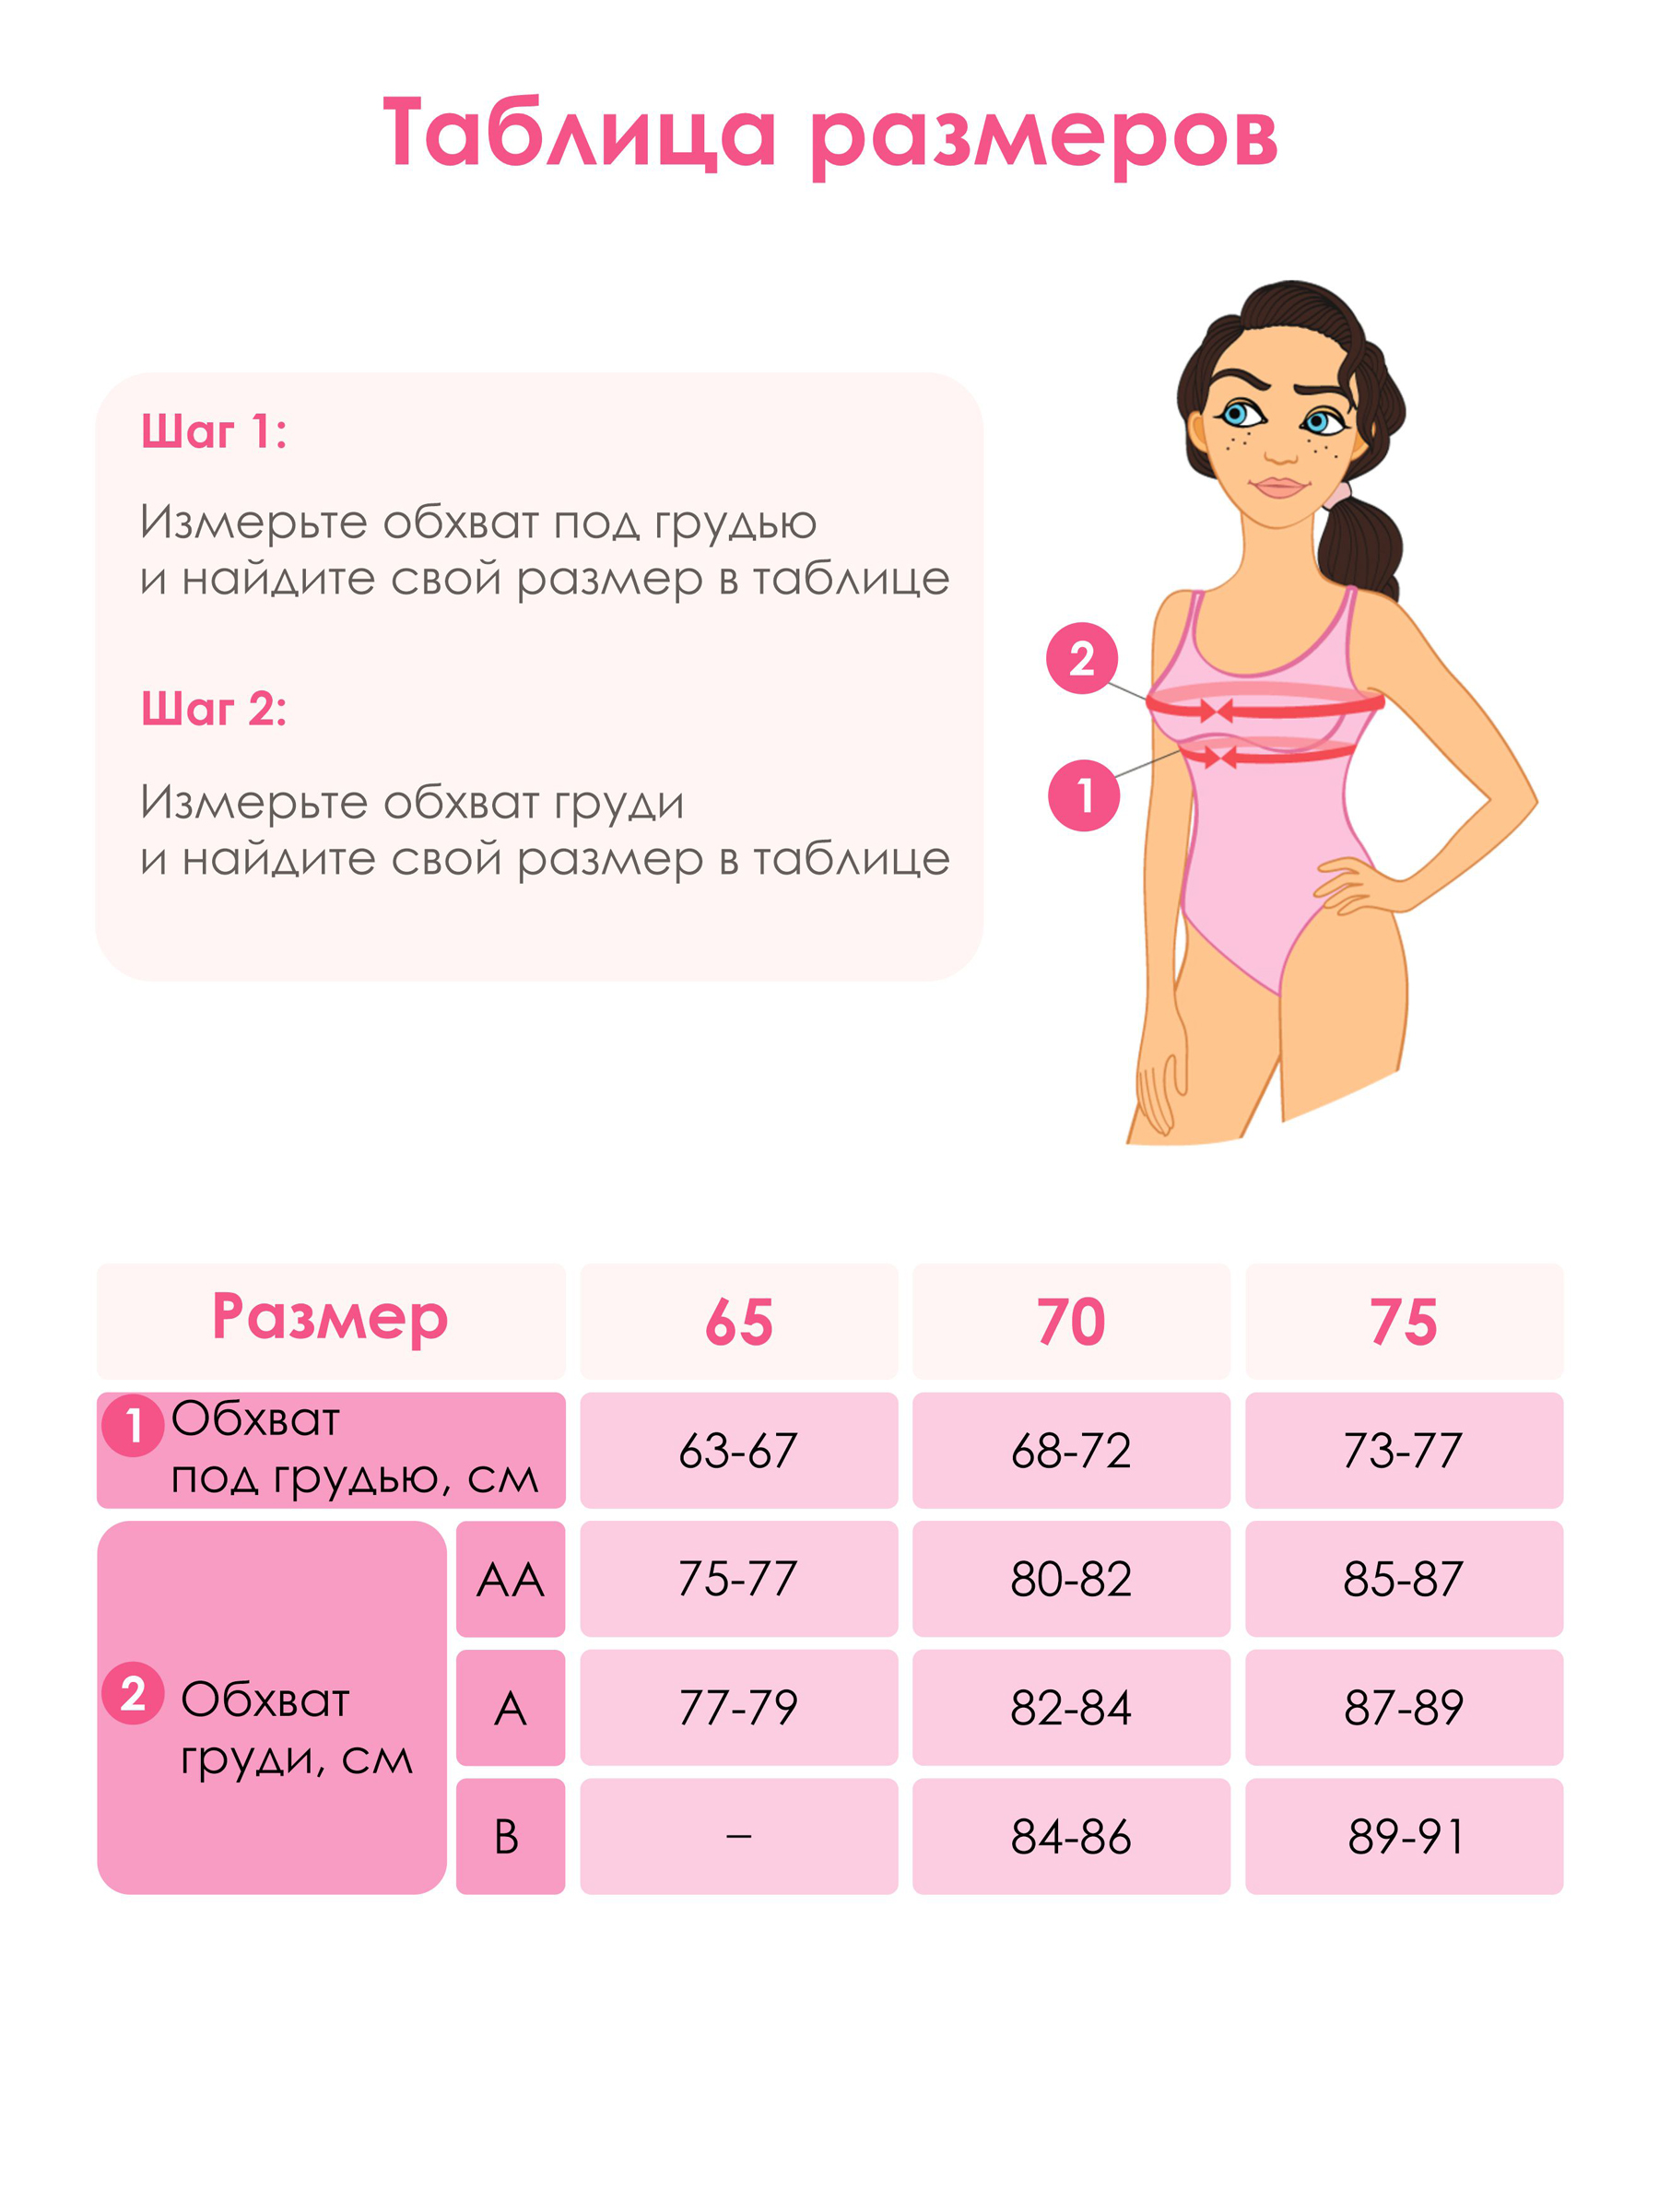 норма размеров груди у девочек фото 11